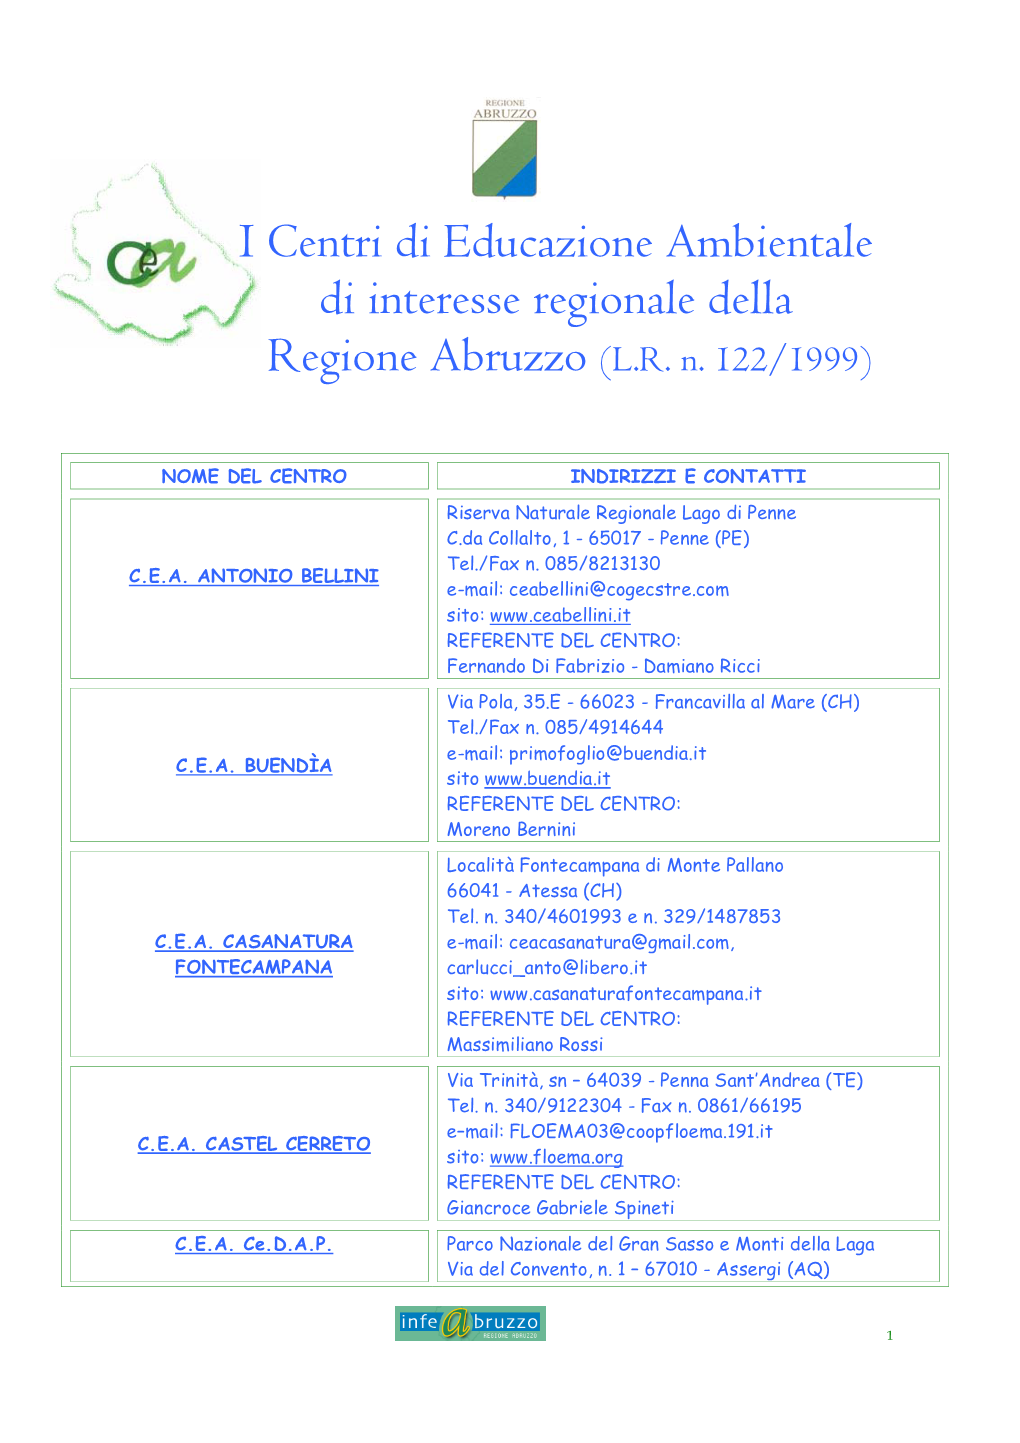 I Centri Di Educazione Ambientale Di Interesse Regionale Della Regione Abruzzo (L.R